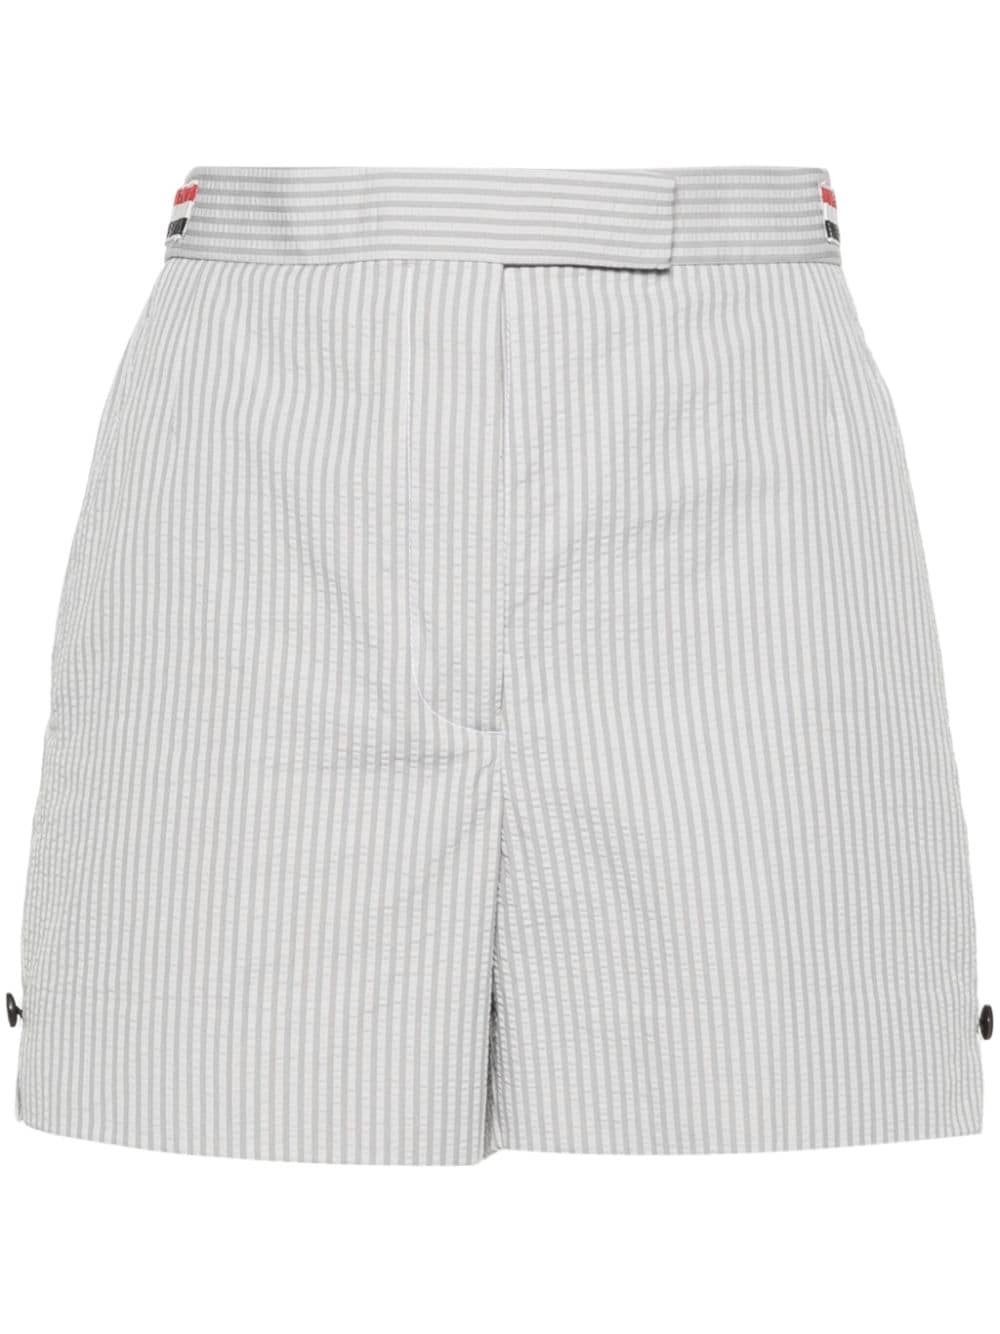 Thom Browne striped seersucker shorts - Grey von Thom Browne